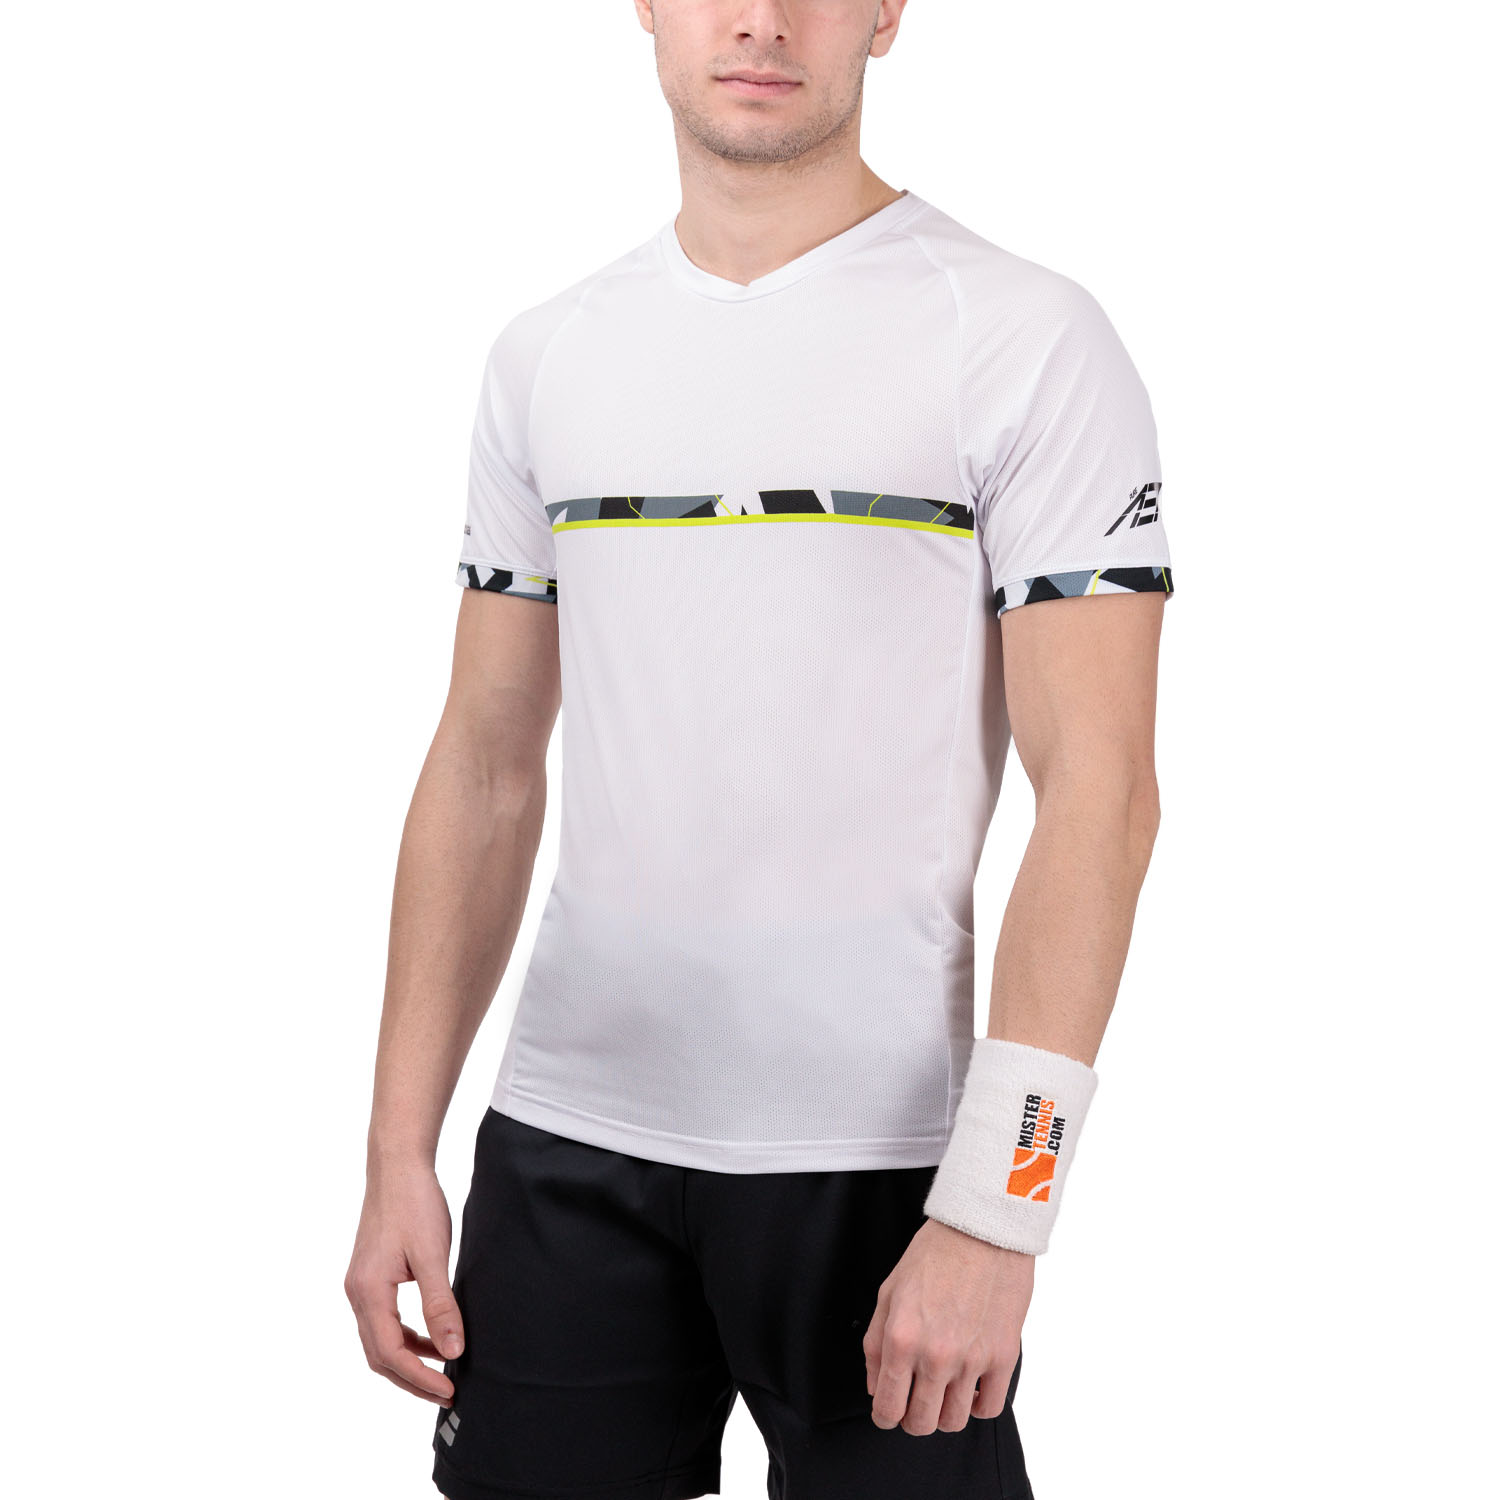 Babolat Aero Crew T-Shirt - White